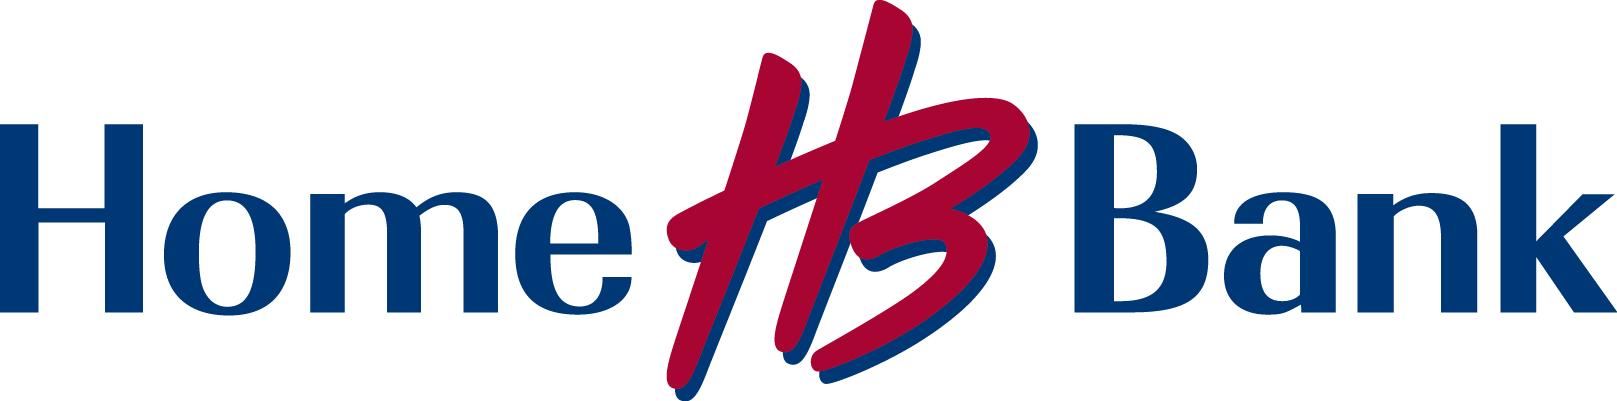 Home Bank logo